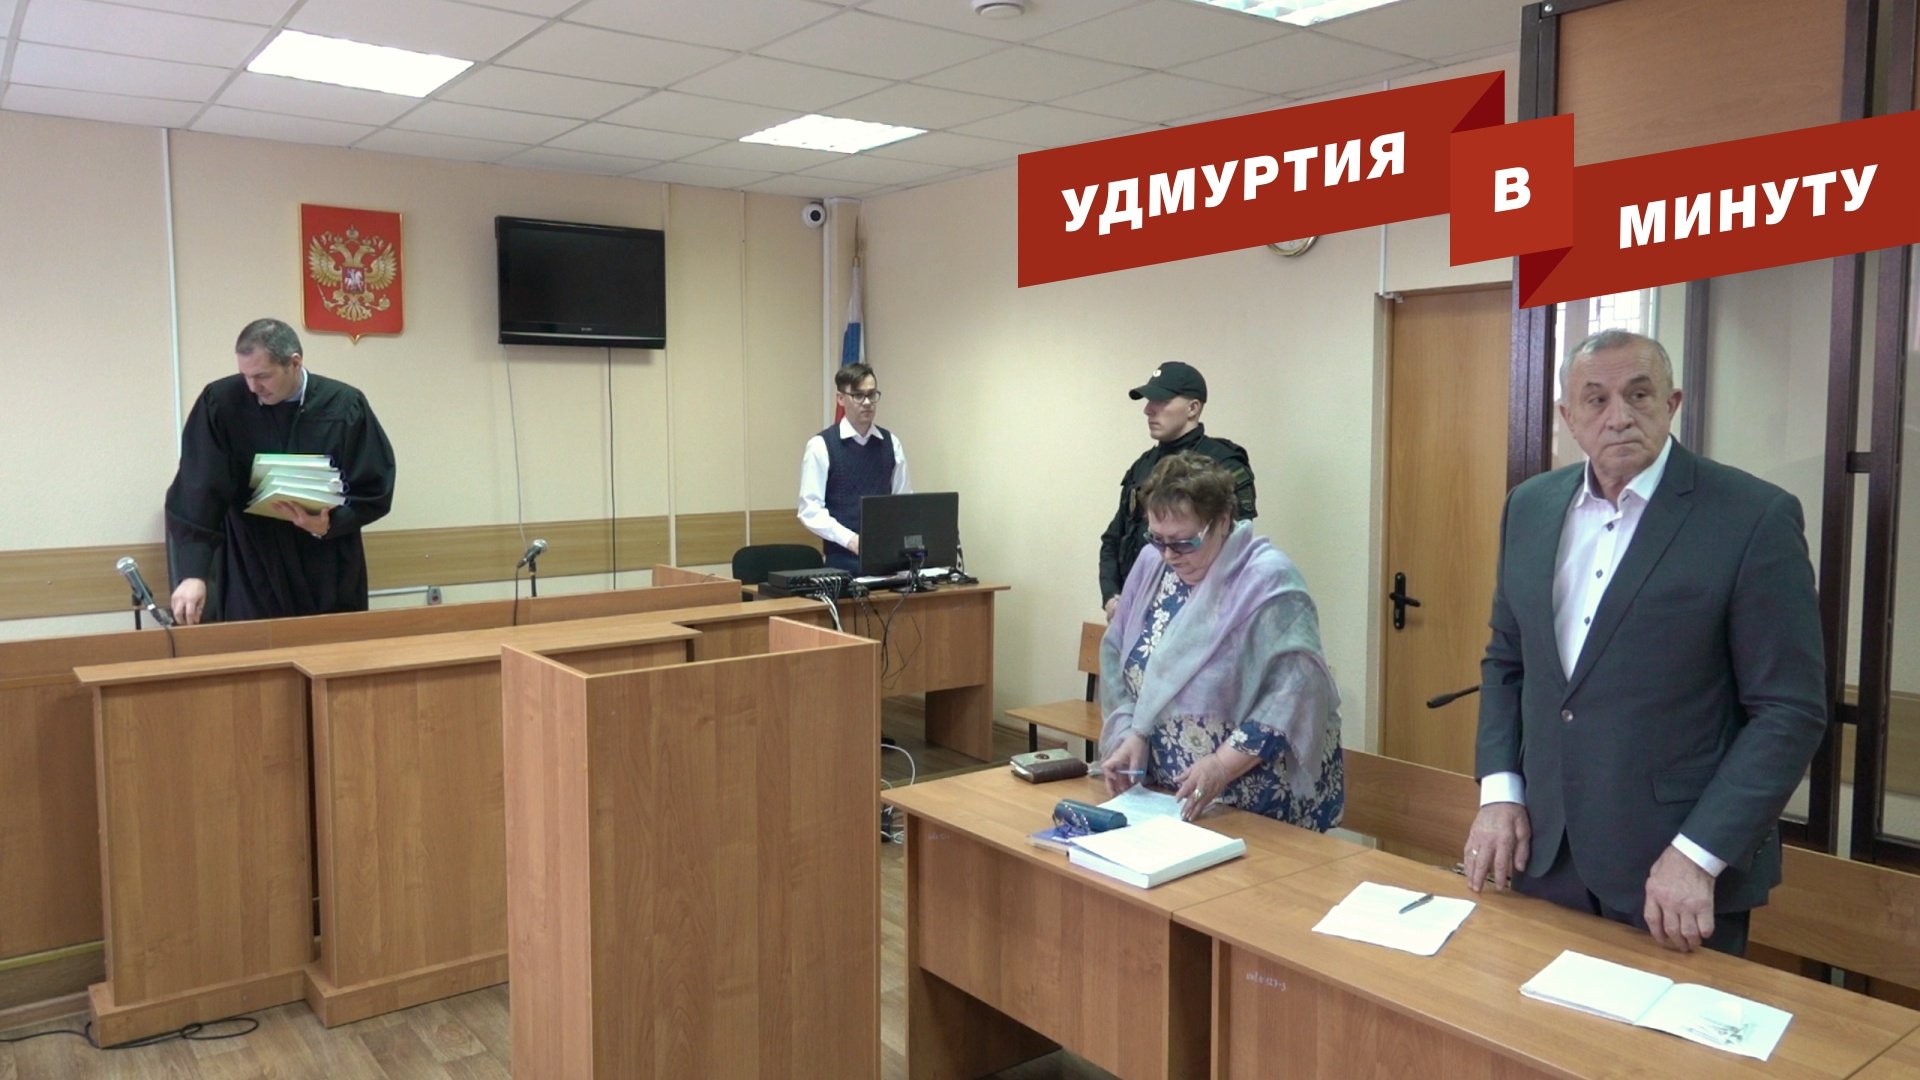 Удмуртия в минуту: суд над Соловьевым и строительство приюта в Бураново